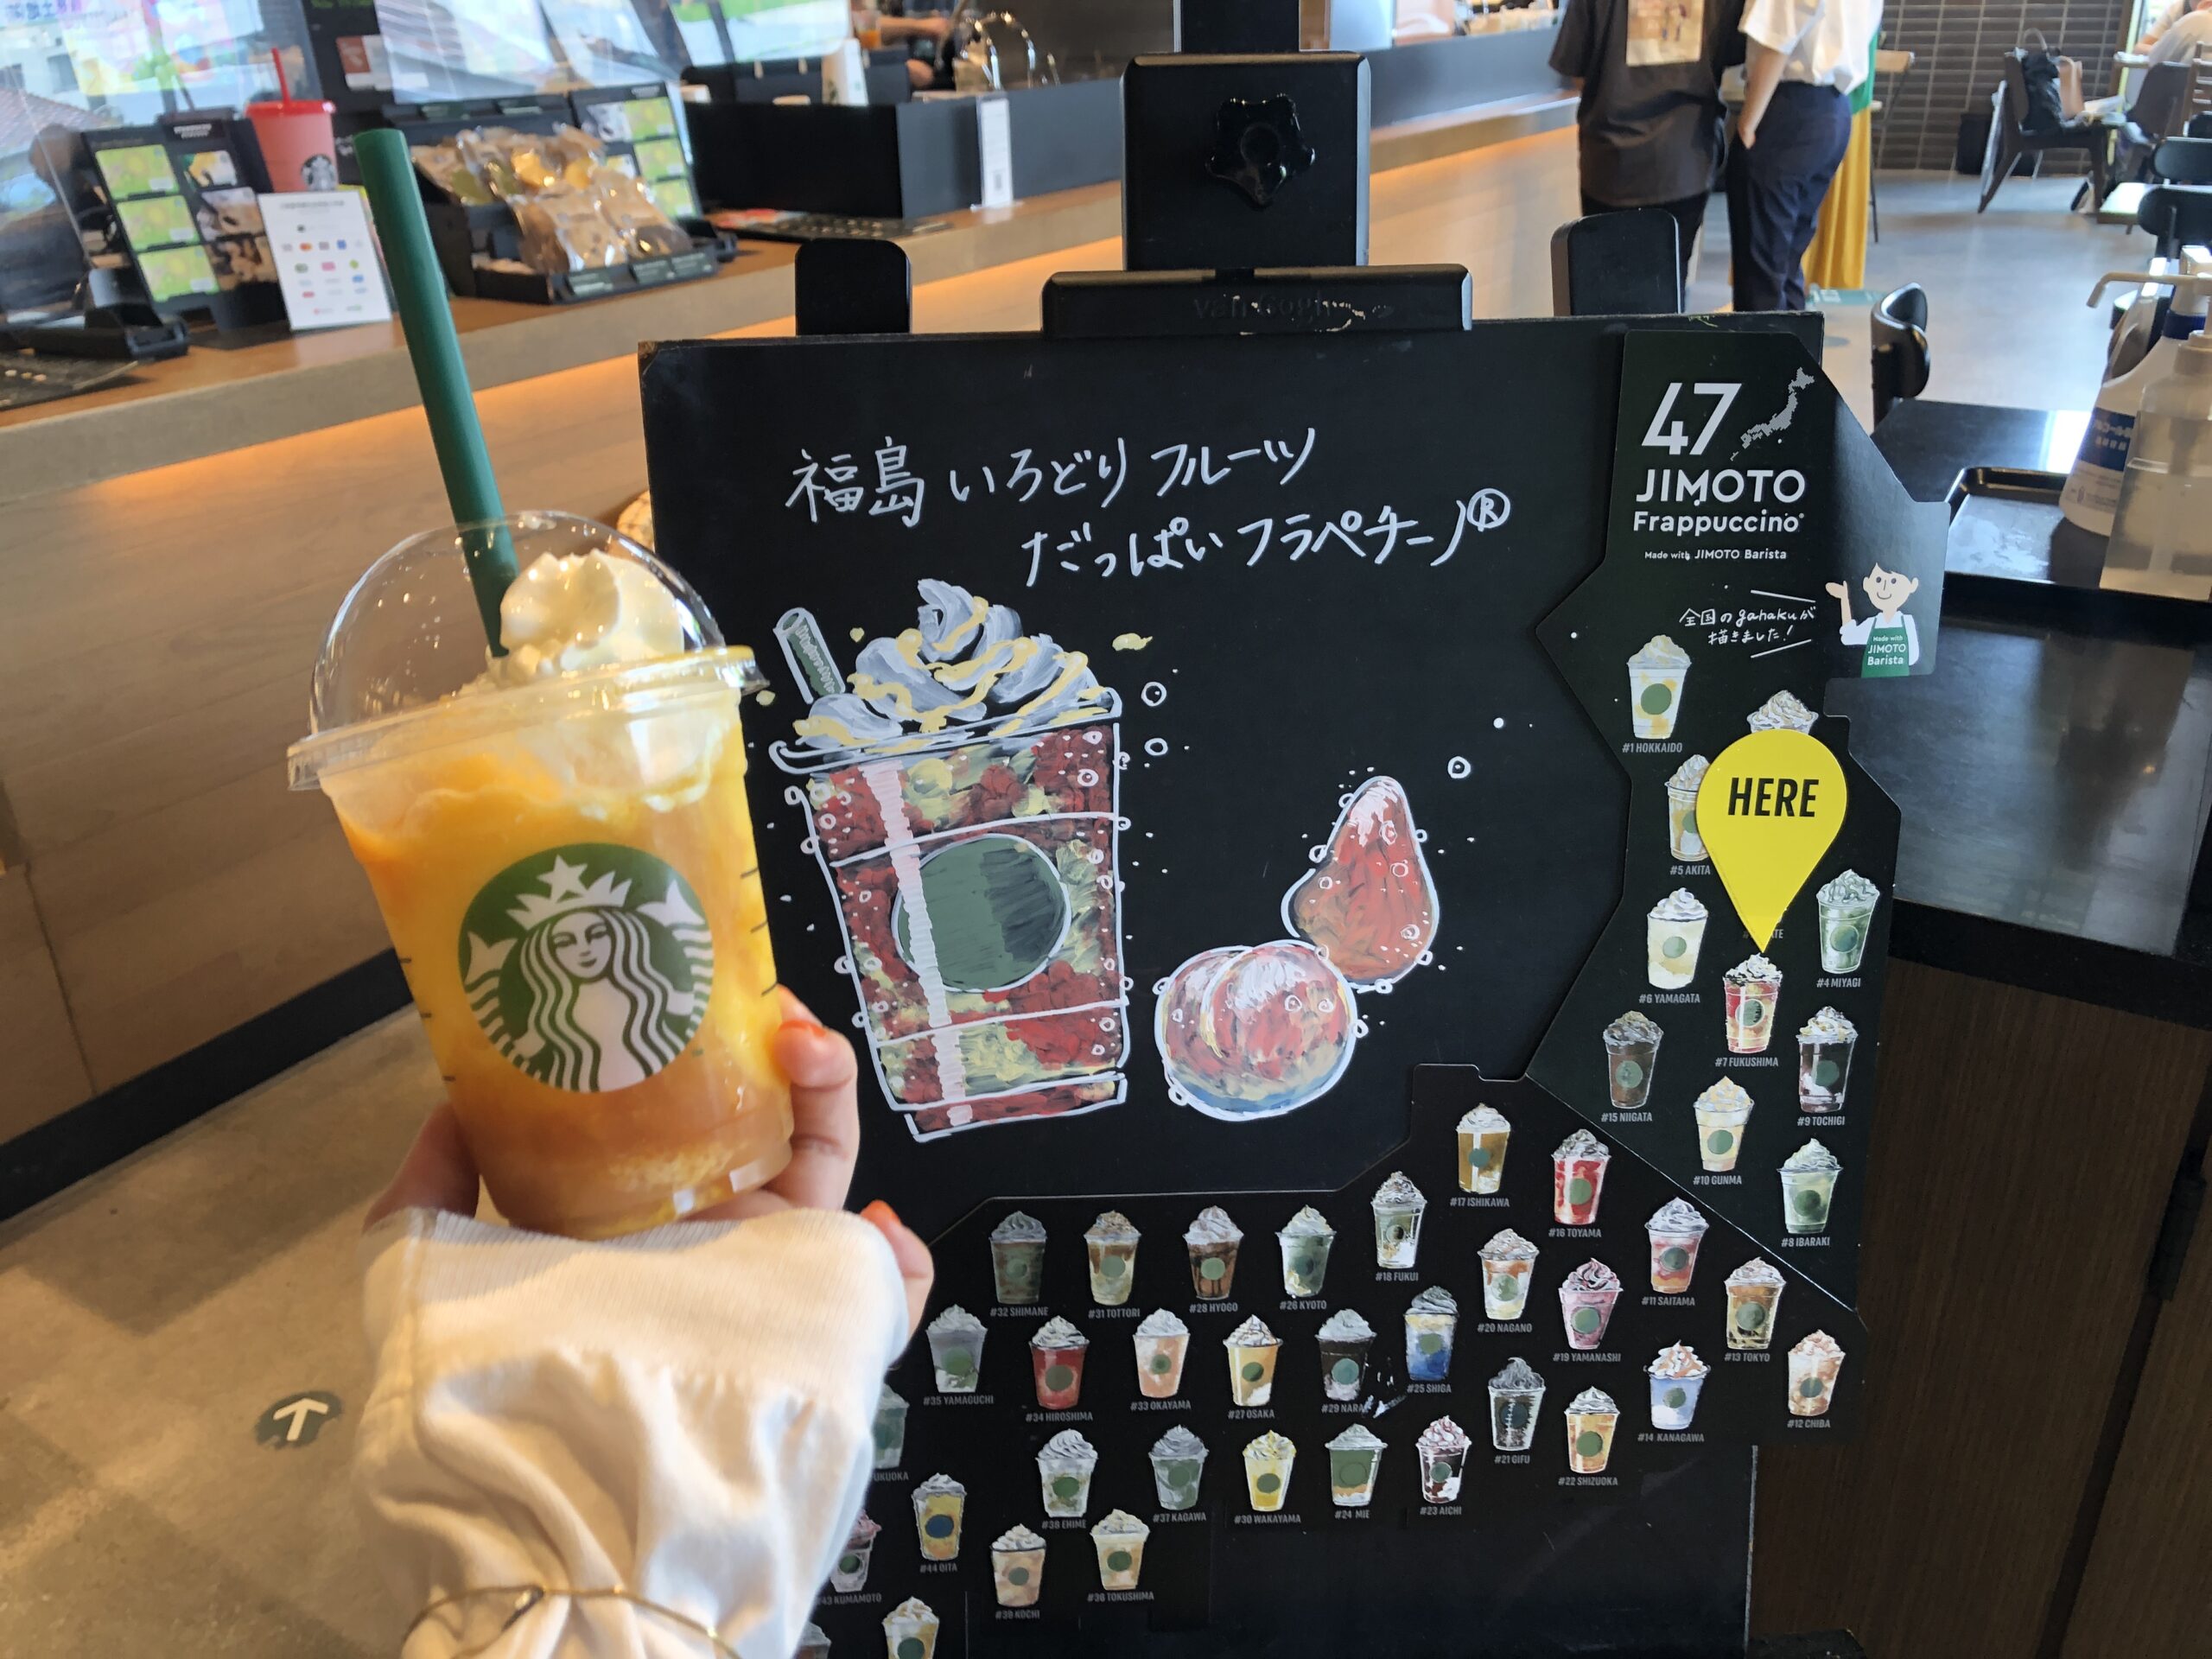 ご当地スタバ 福島いろどりフルーツだっぱいフラペチーノ をチェック 47 Jimoto Frappuccino スターバックスコーヒー せんだいマチプラ